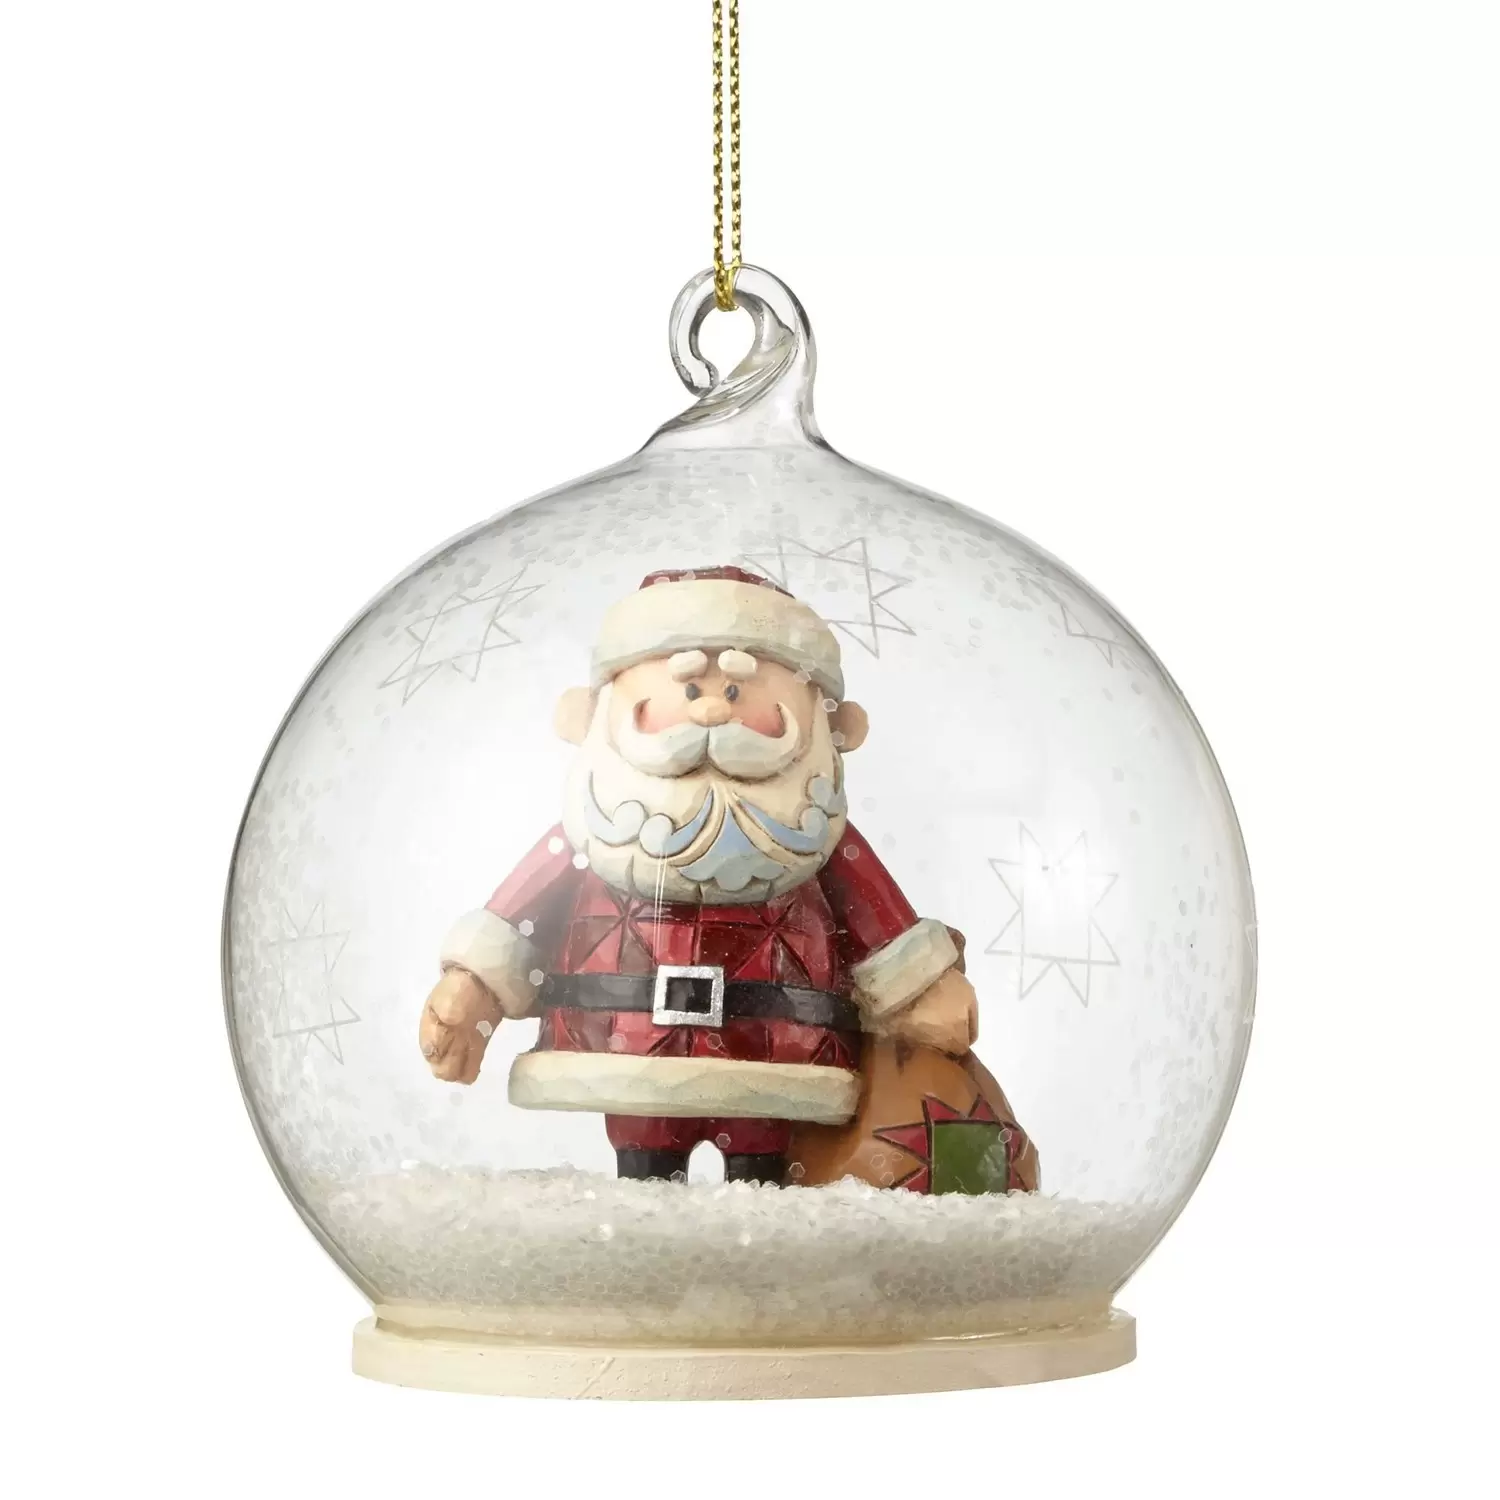 Cartoons  - Jim Shore - Santa in Dome Hanging Ornament